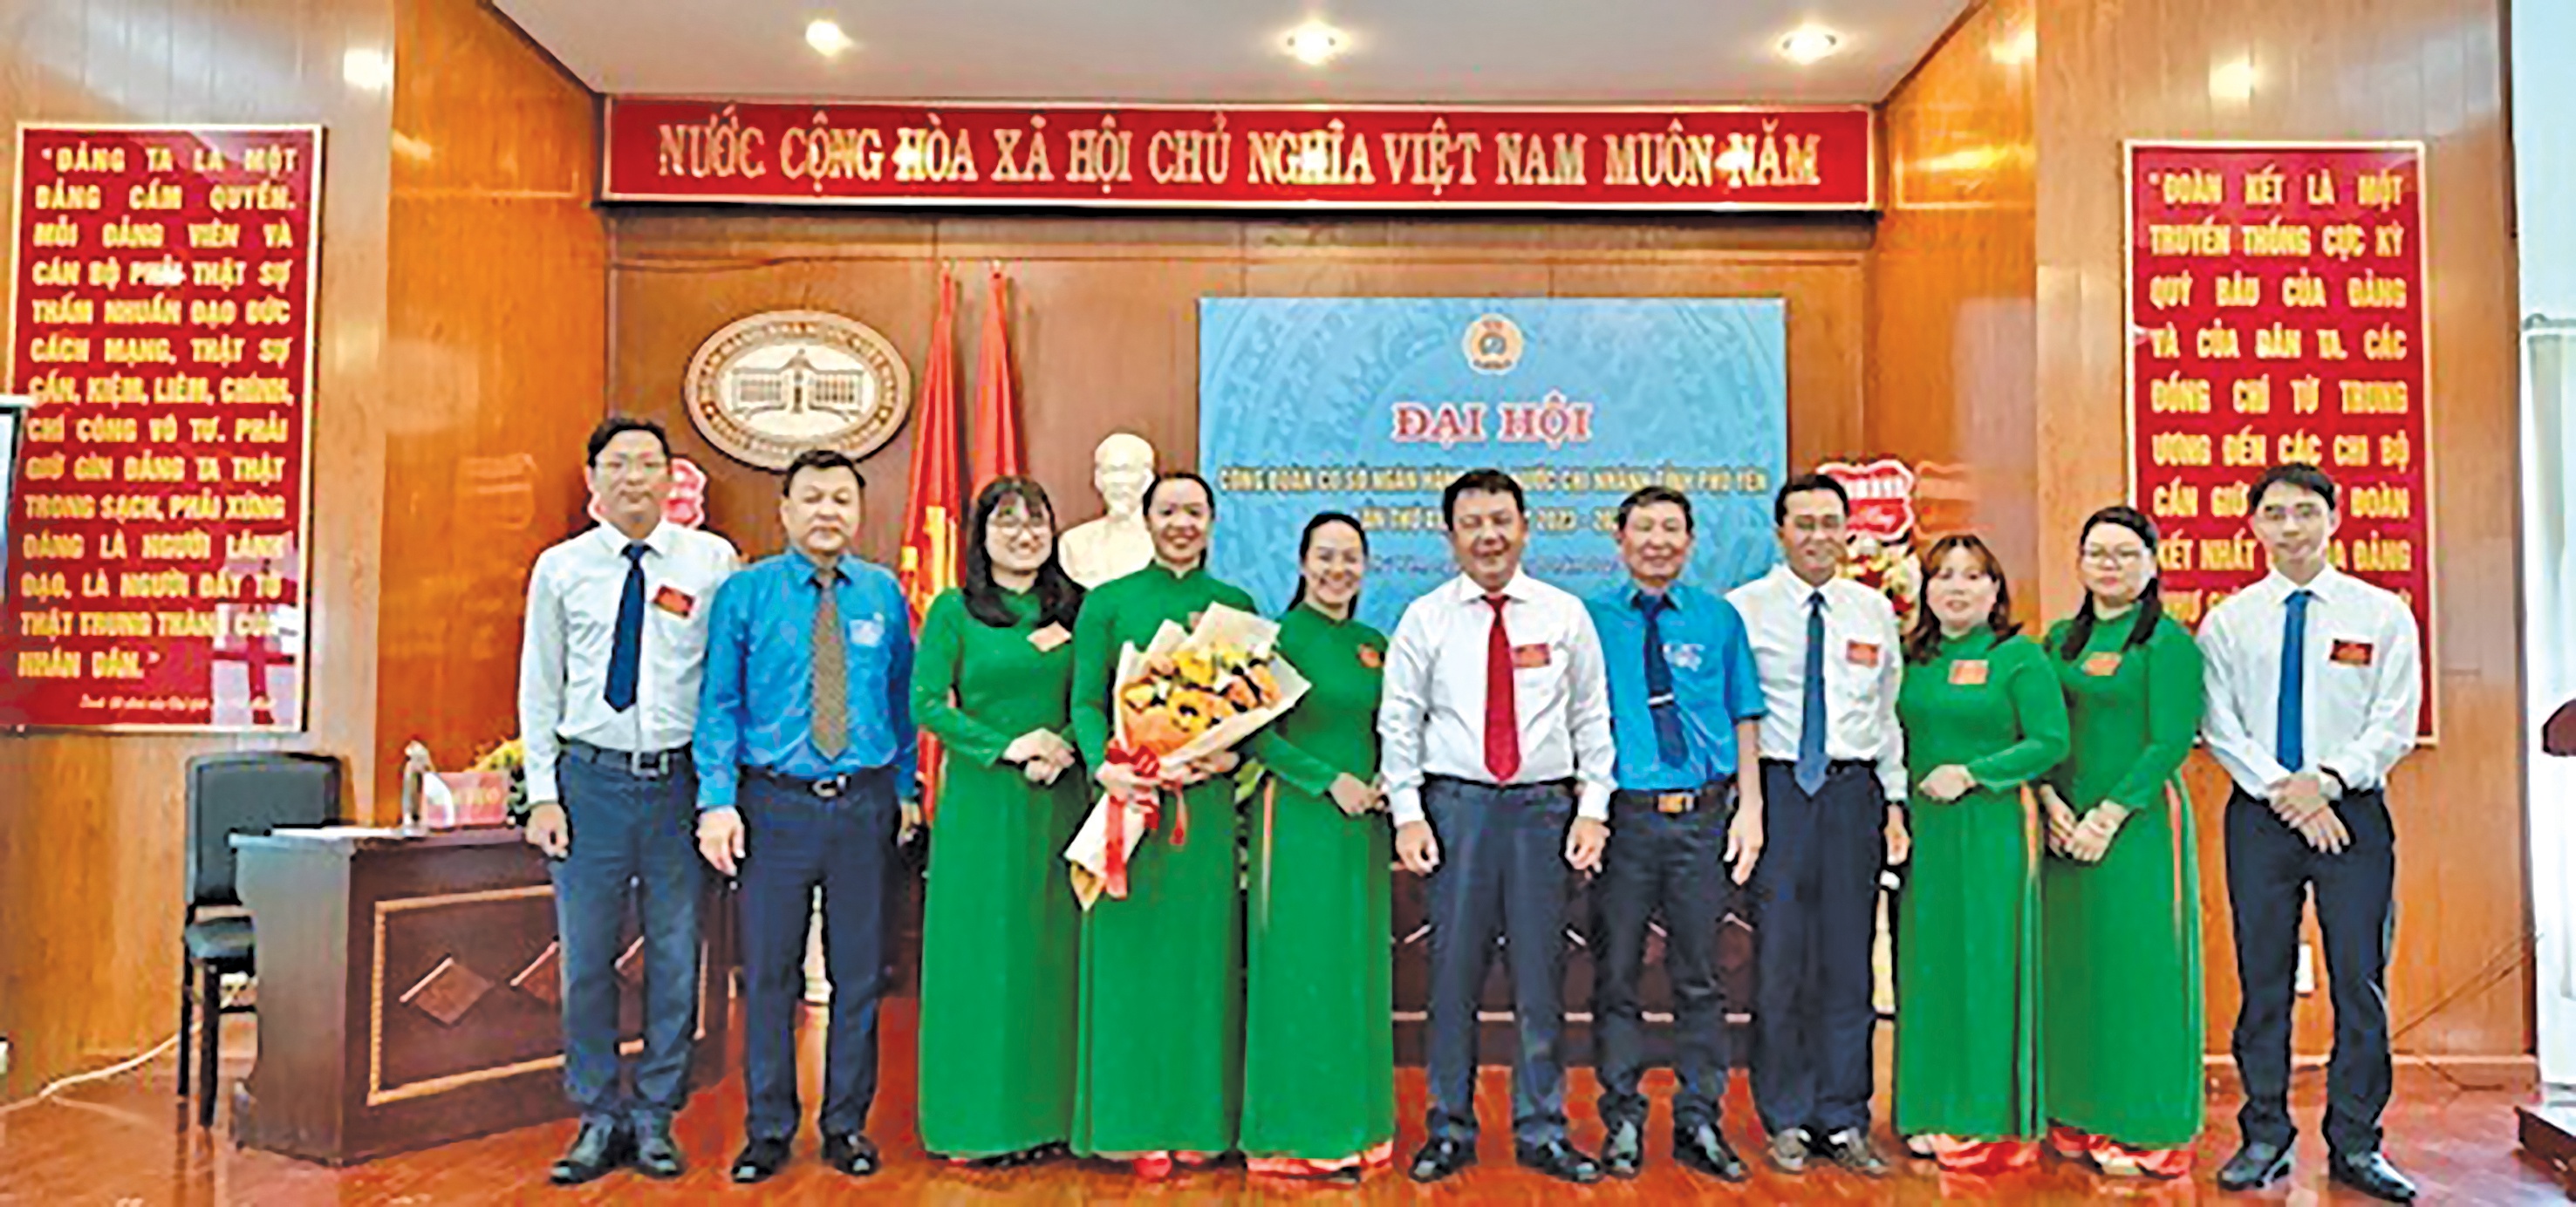 Đại hội CĐCS NHNN chi nhánh Phú Yên  lần thứ XI, nhiệm kỳ 2023 - 2028